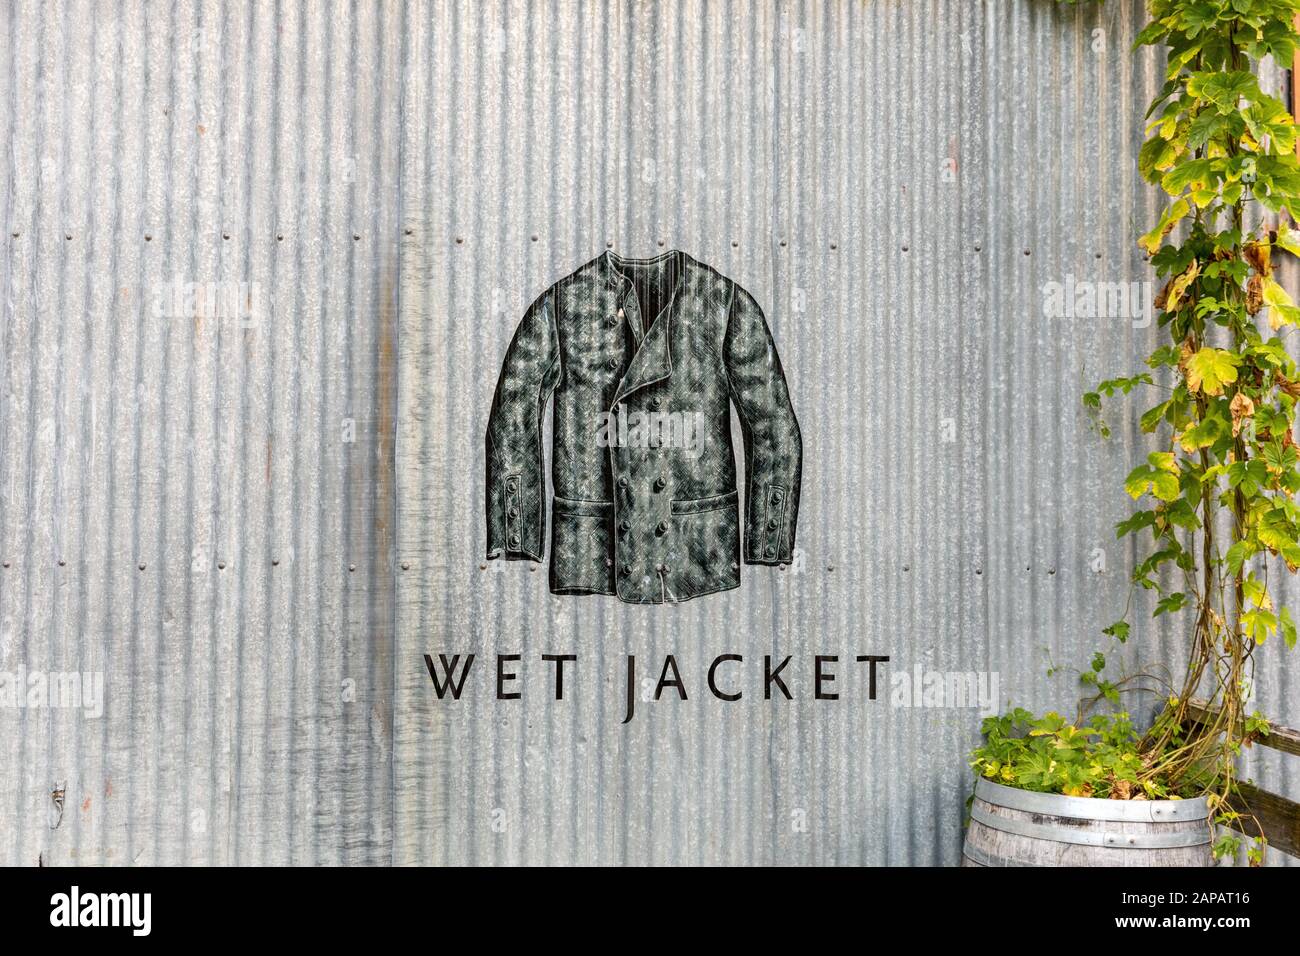 Logo et vigne sur le côté du bâtiment en métal Wet Jacket Banque D'Images